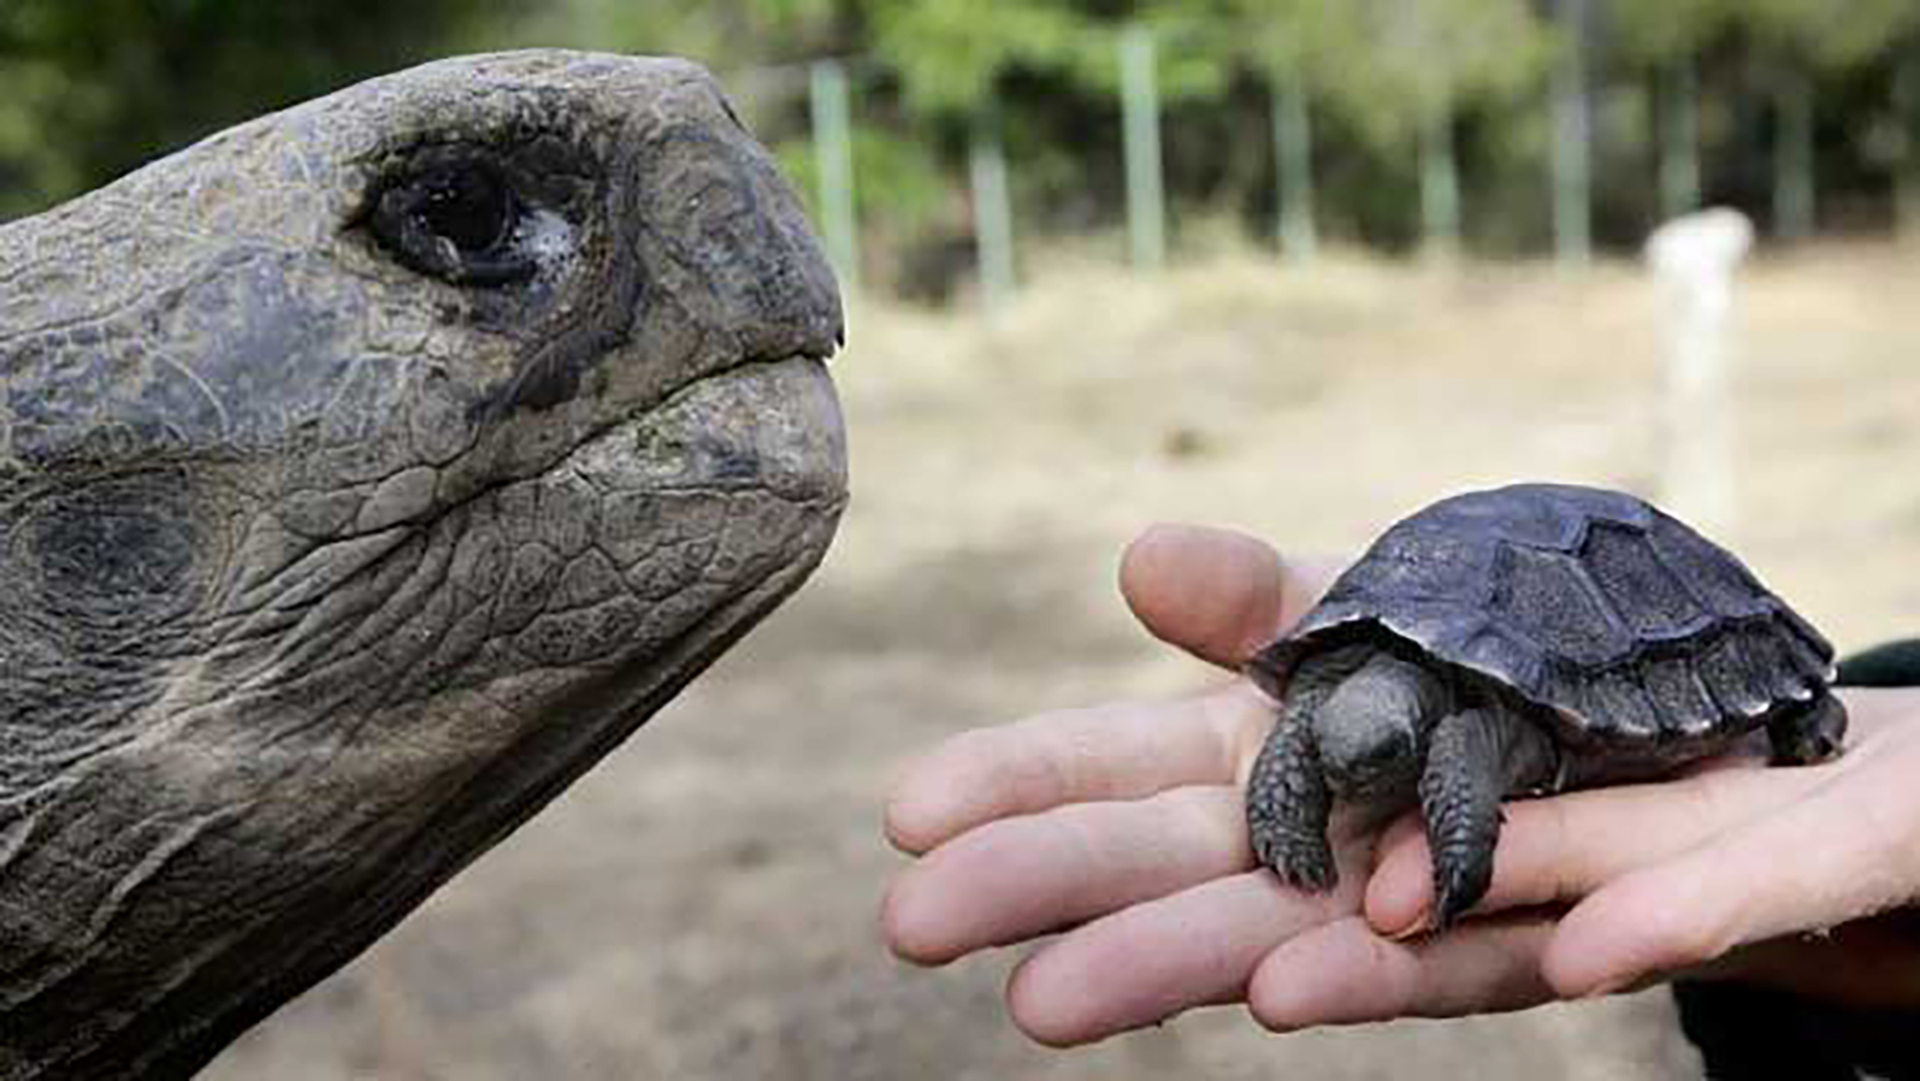 Las tortugas galápagos en el mercado internacional pueden costar miles de dólares.